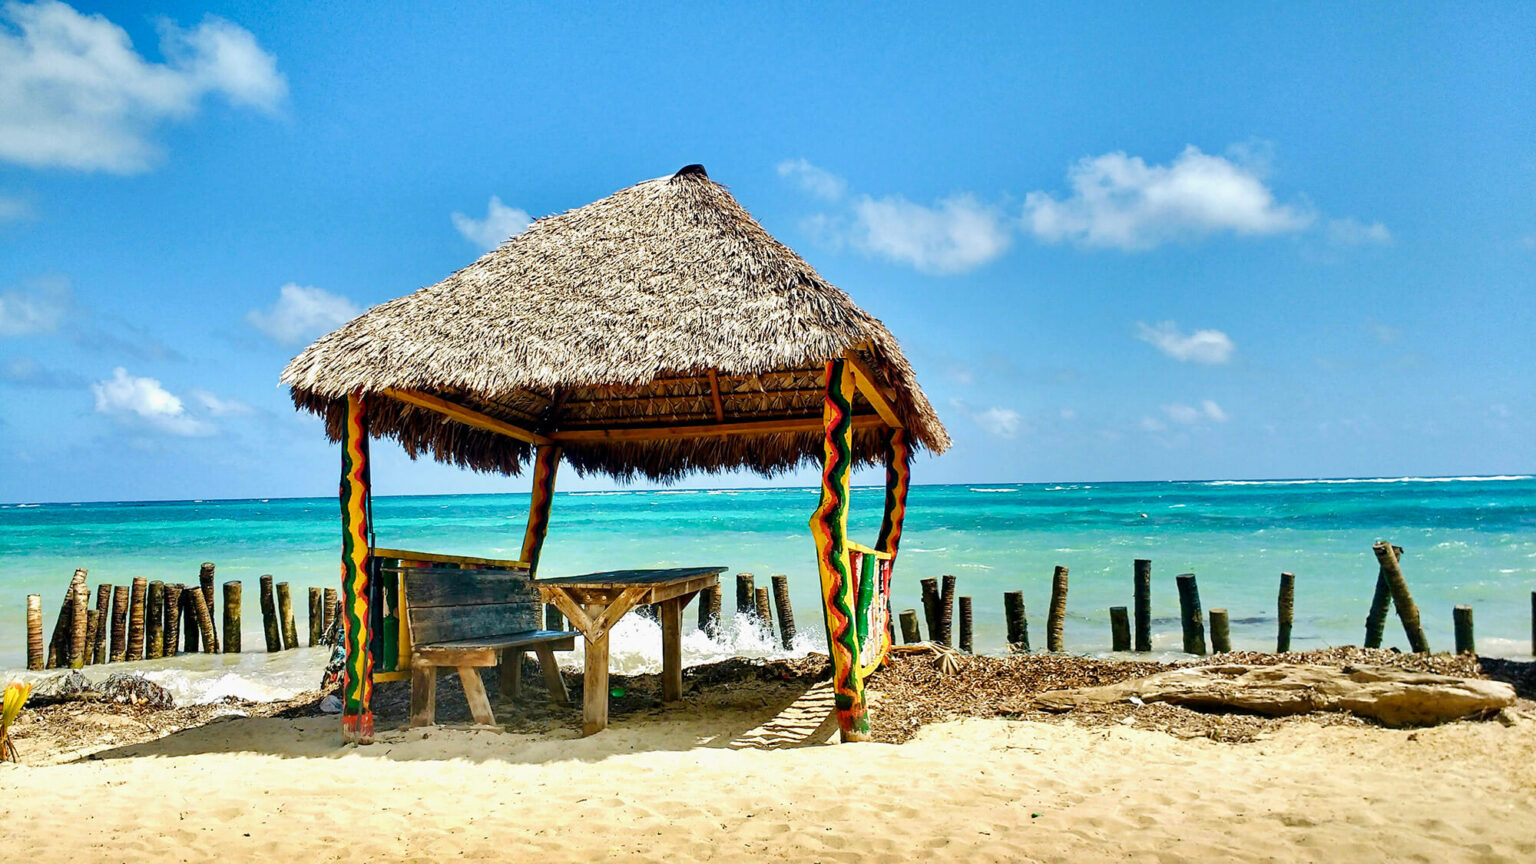 Little hut on a beach